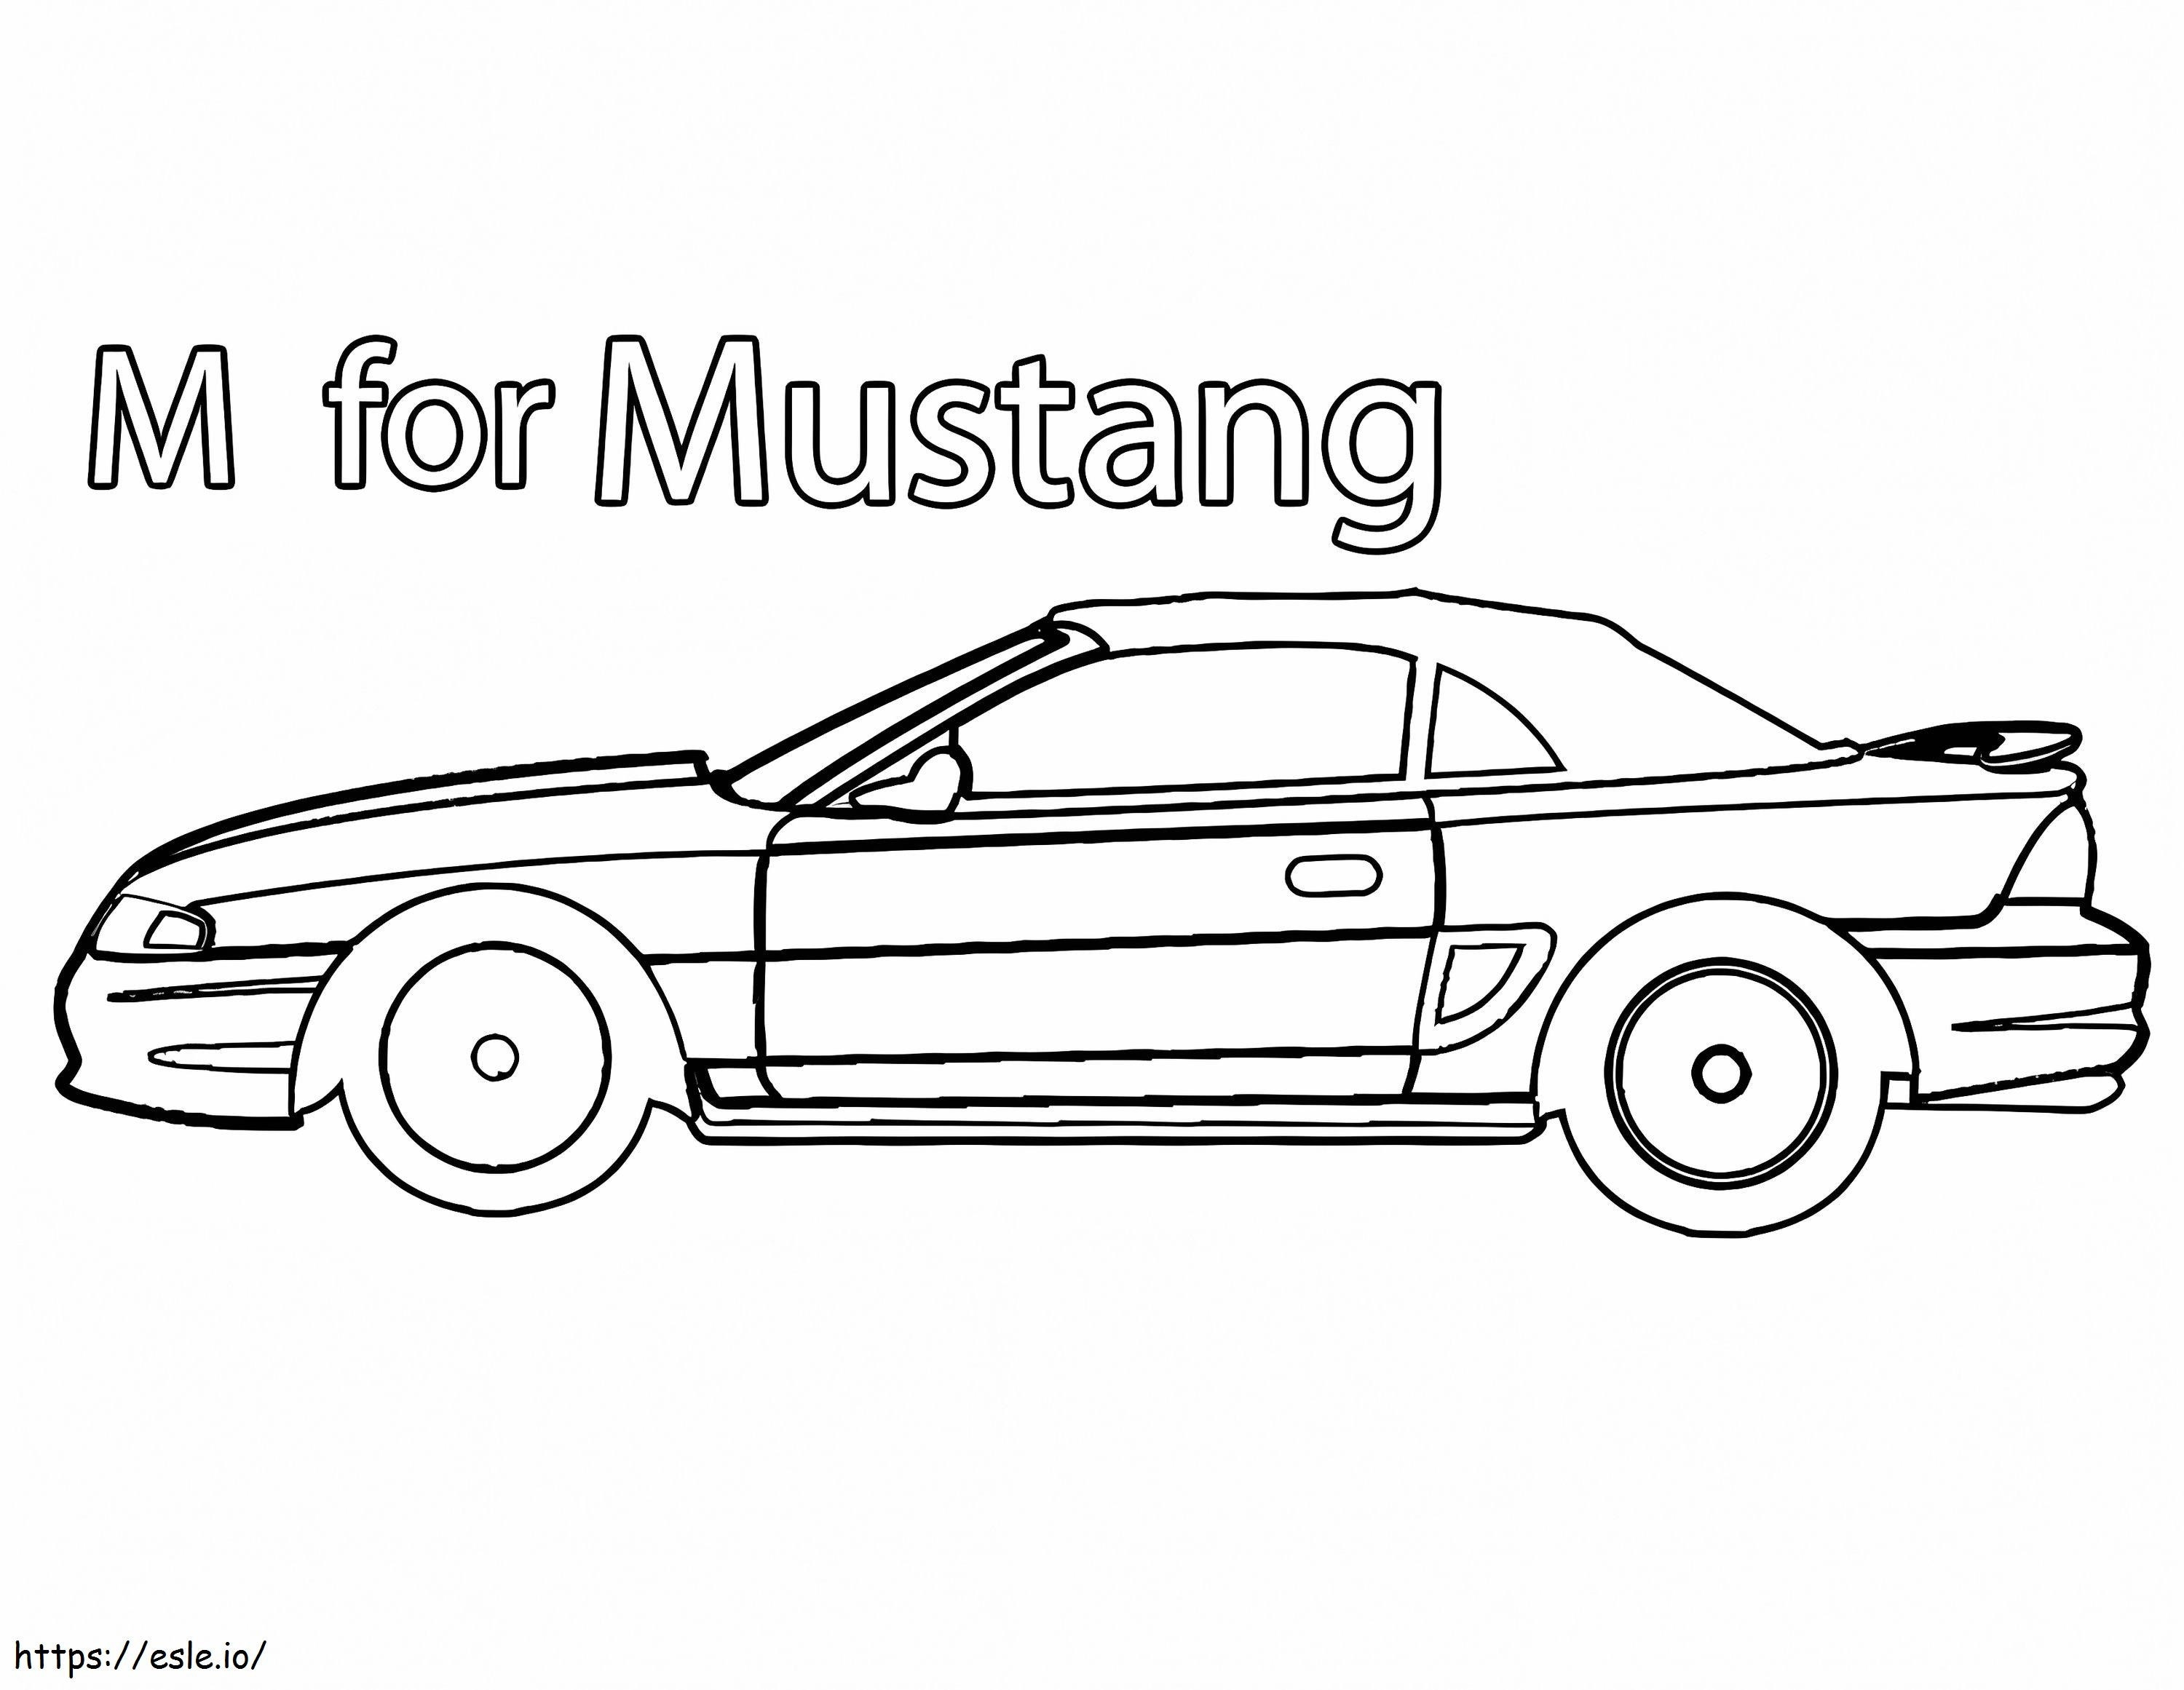 M Für Mustang ausmalbilder